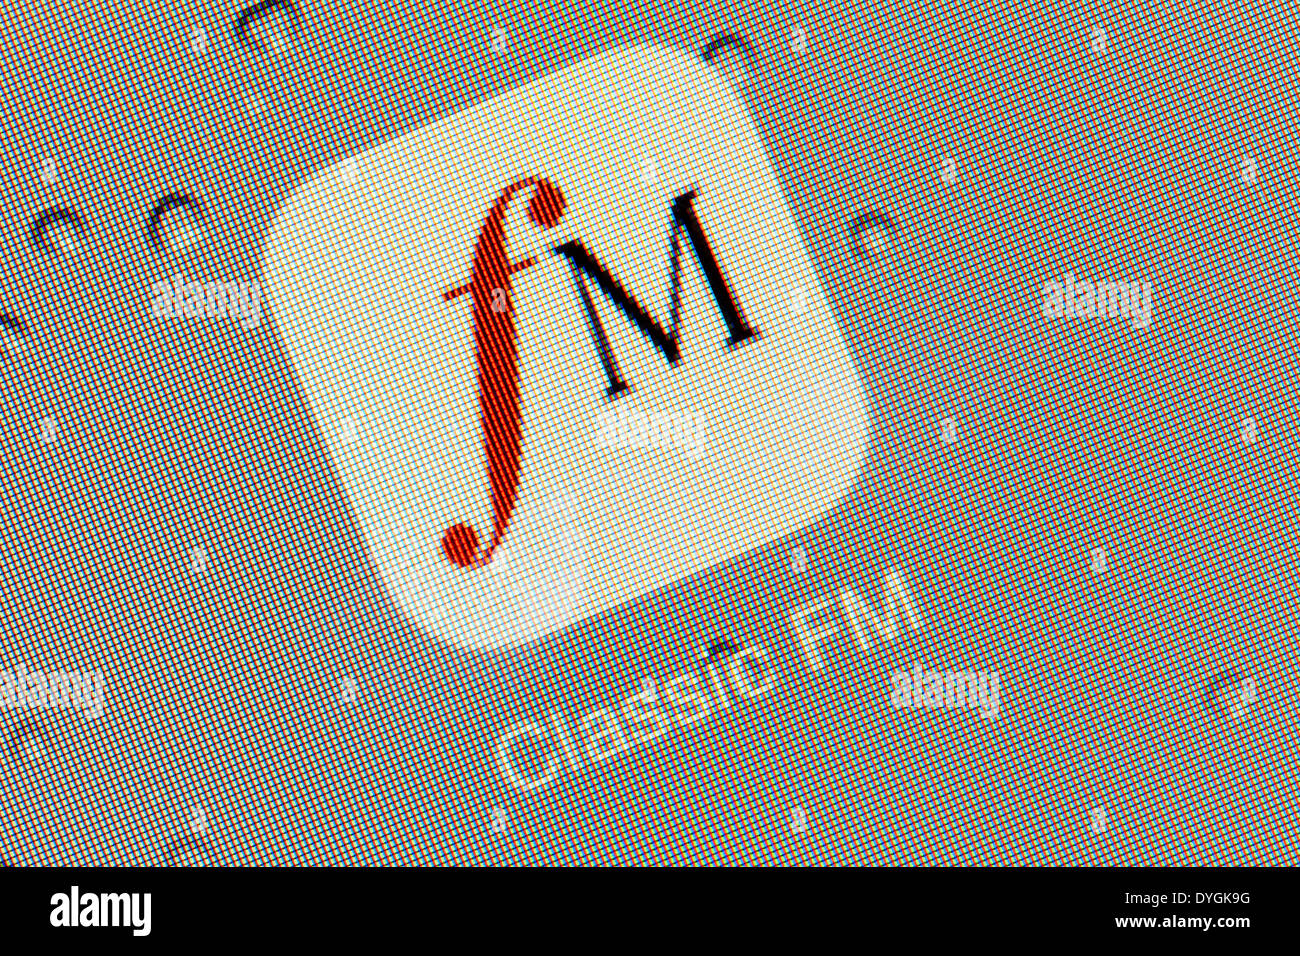 Classic FM app logotipo ícono en el iPad apps logos iconos Foto de stock